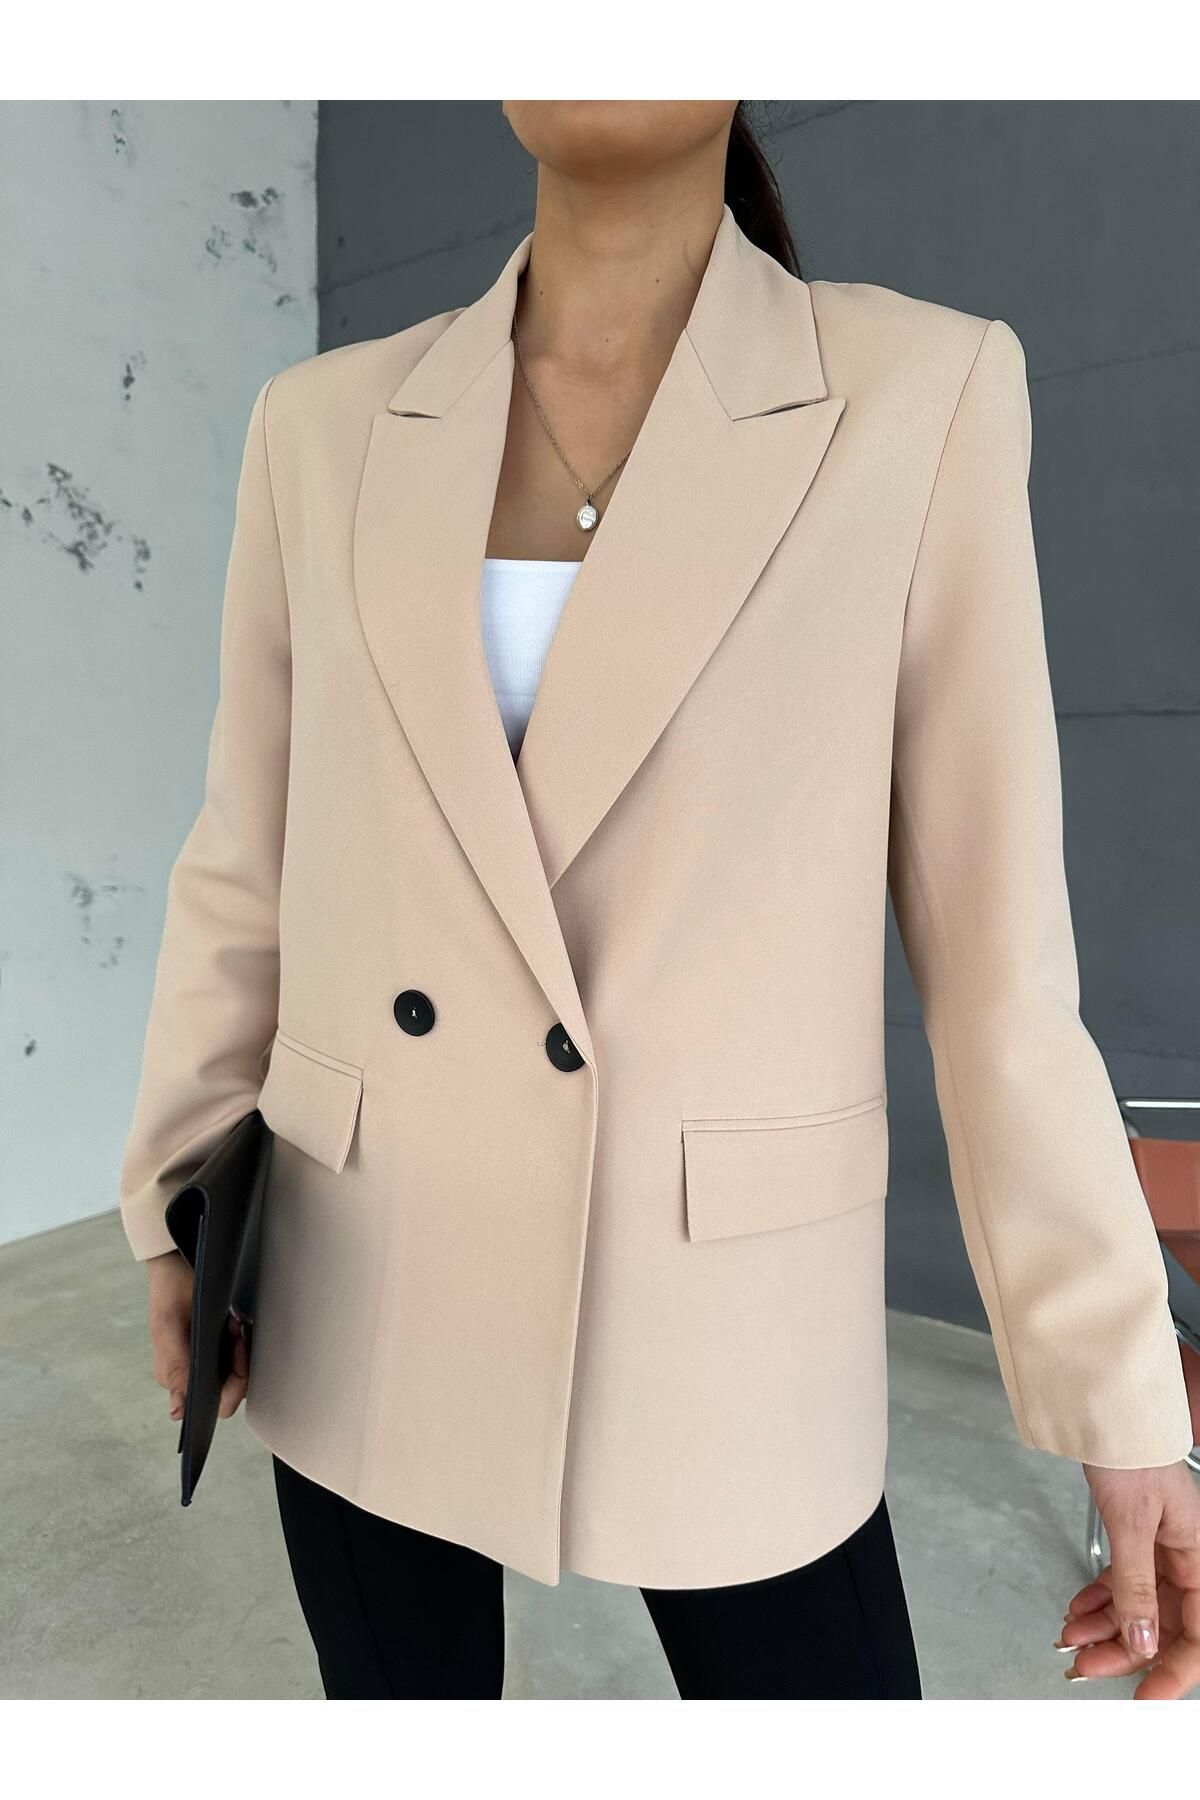 Maldia Shop Kadın Double Kumaş Astarlı Krem Blazer Ceket